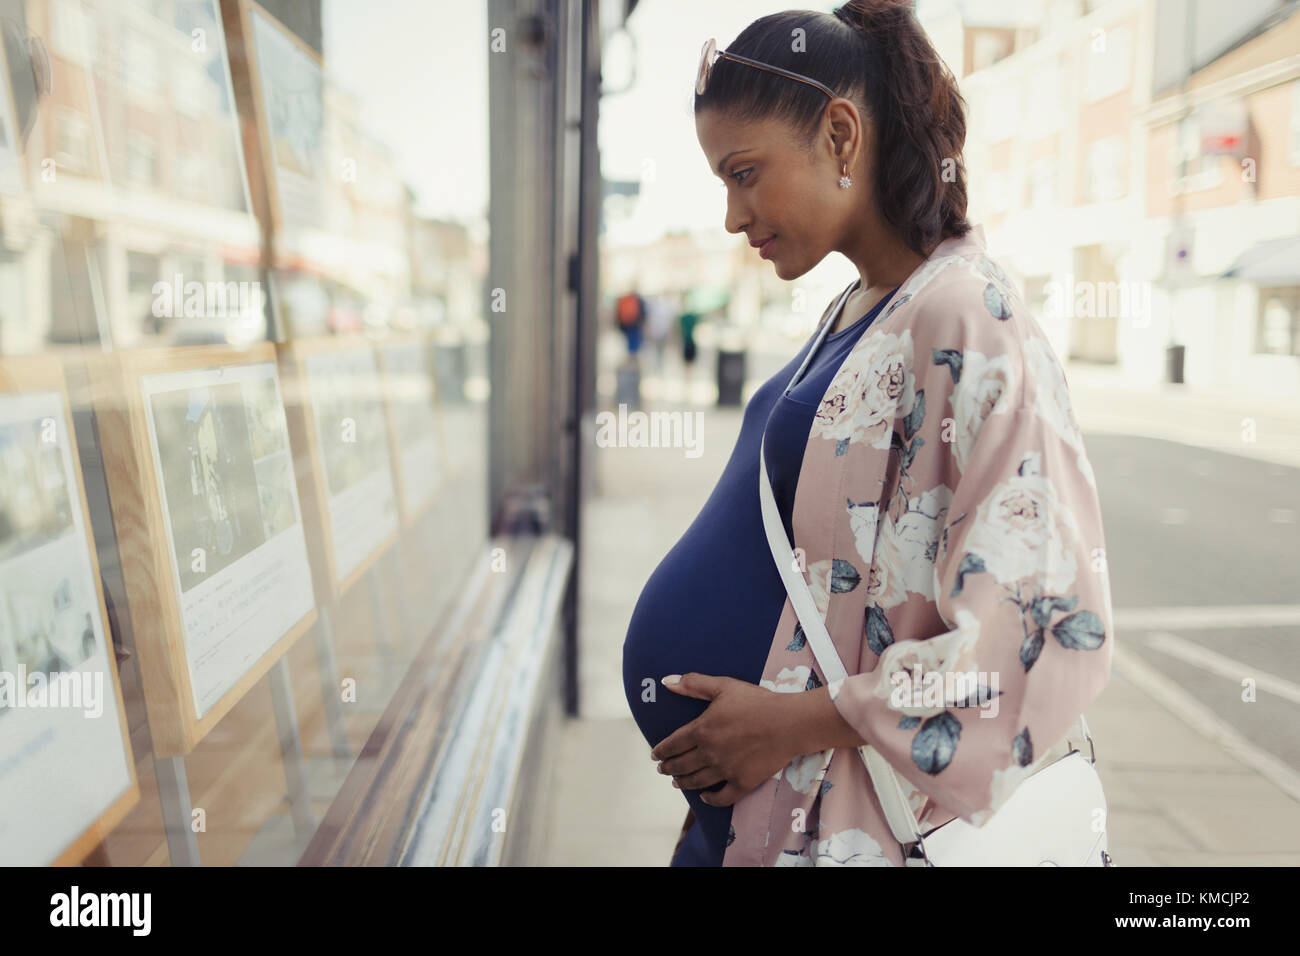 Donna incinta che sta navigando gli elenchi immobiliari a Urban storefront Foto Stock